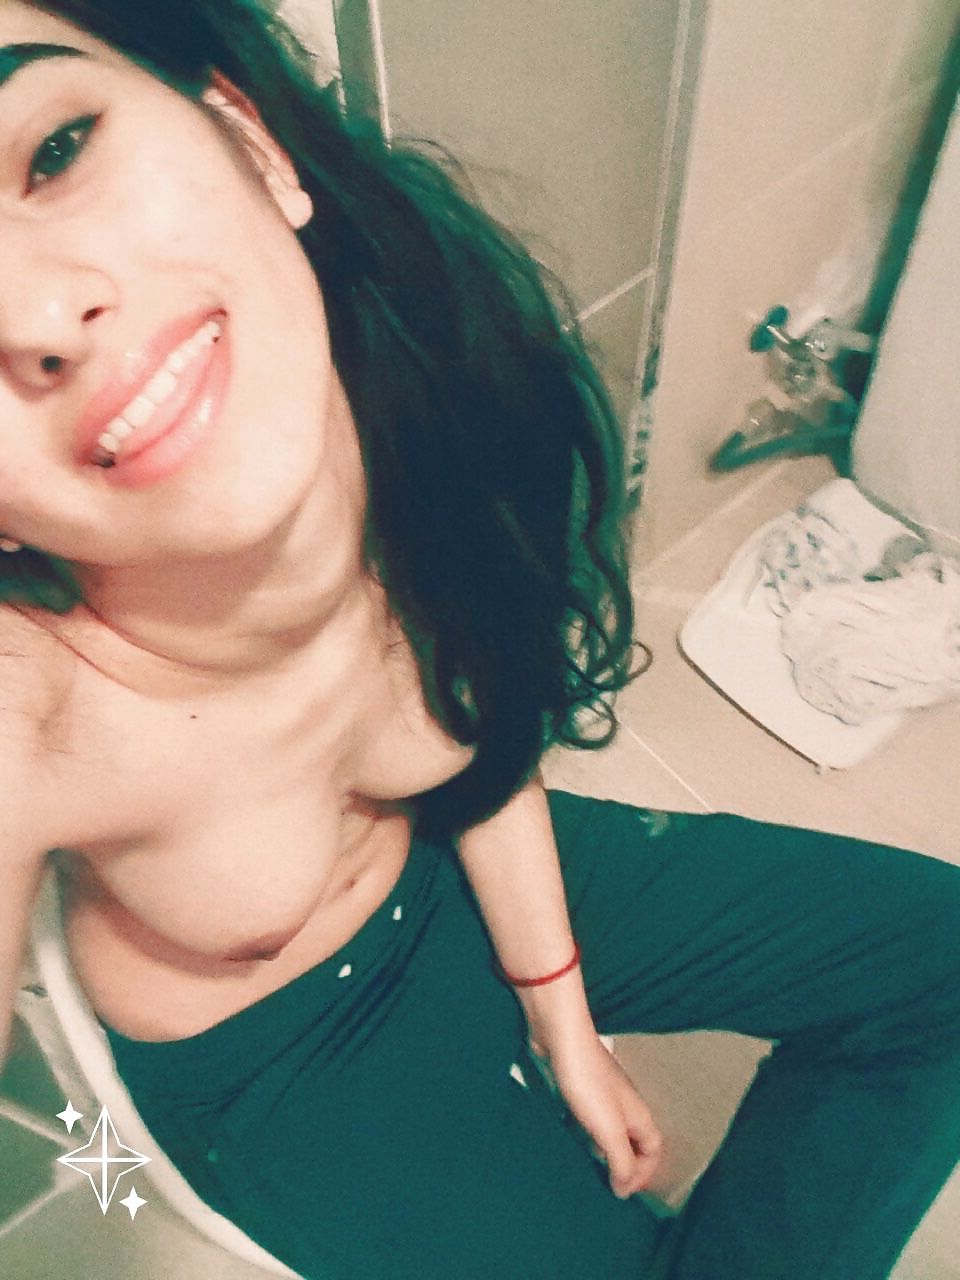 Snapchat Leaked Girls Nude Selfies